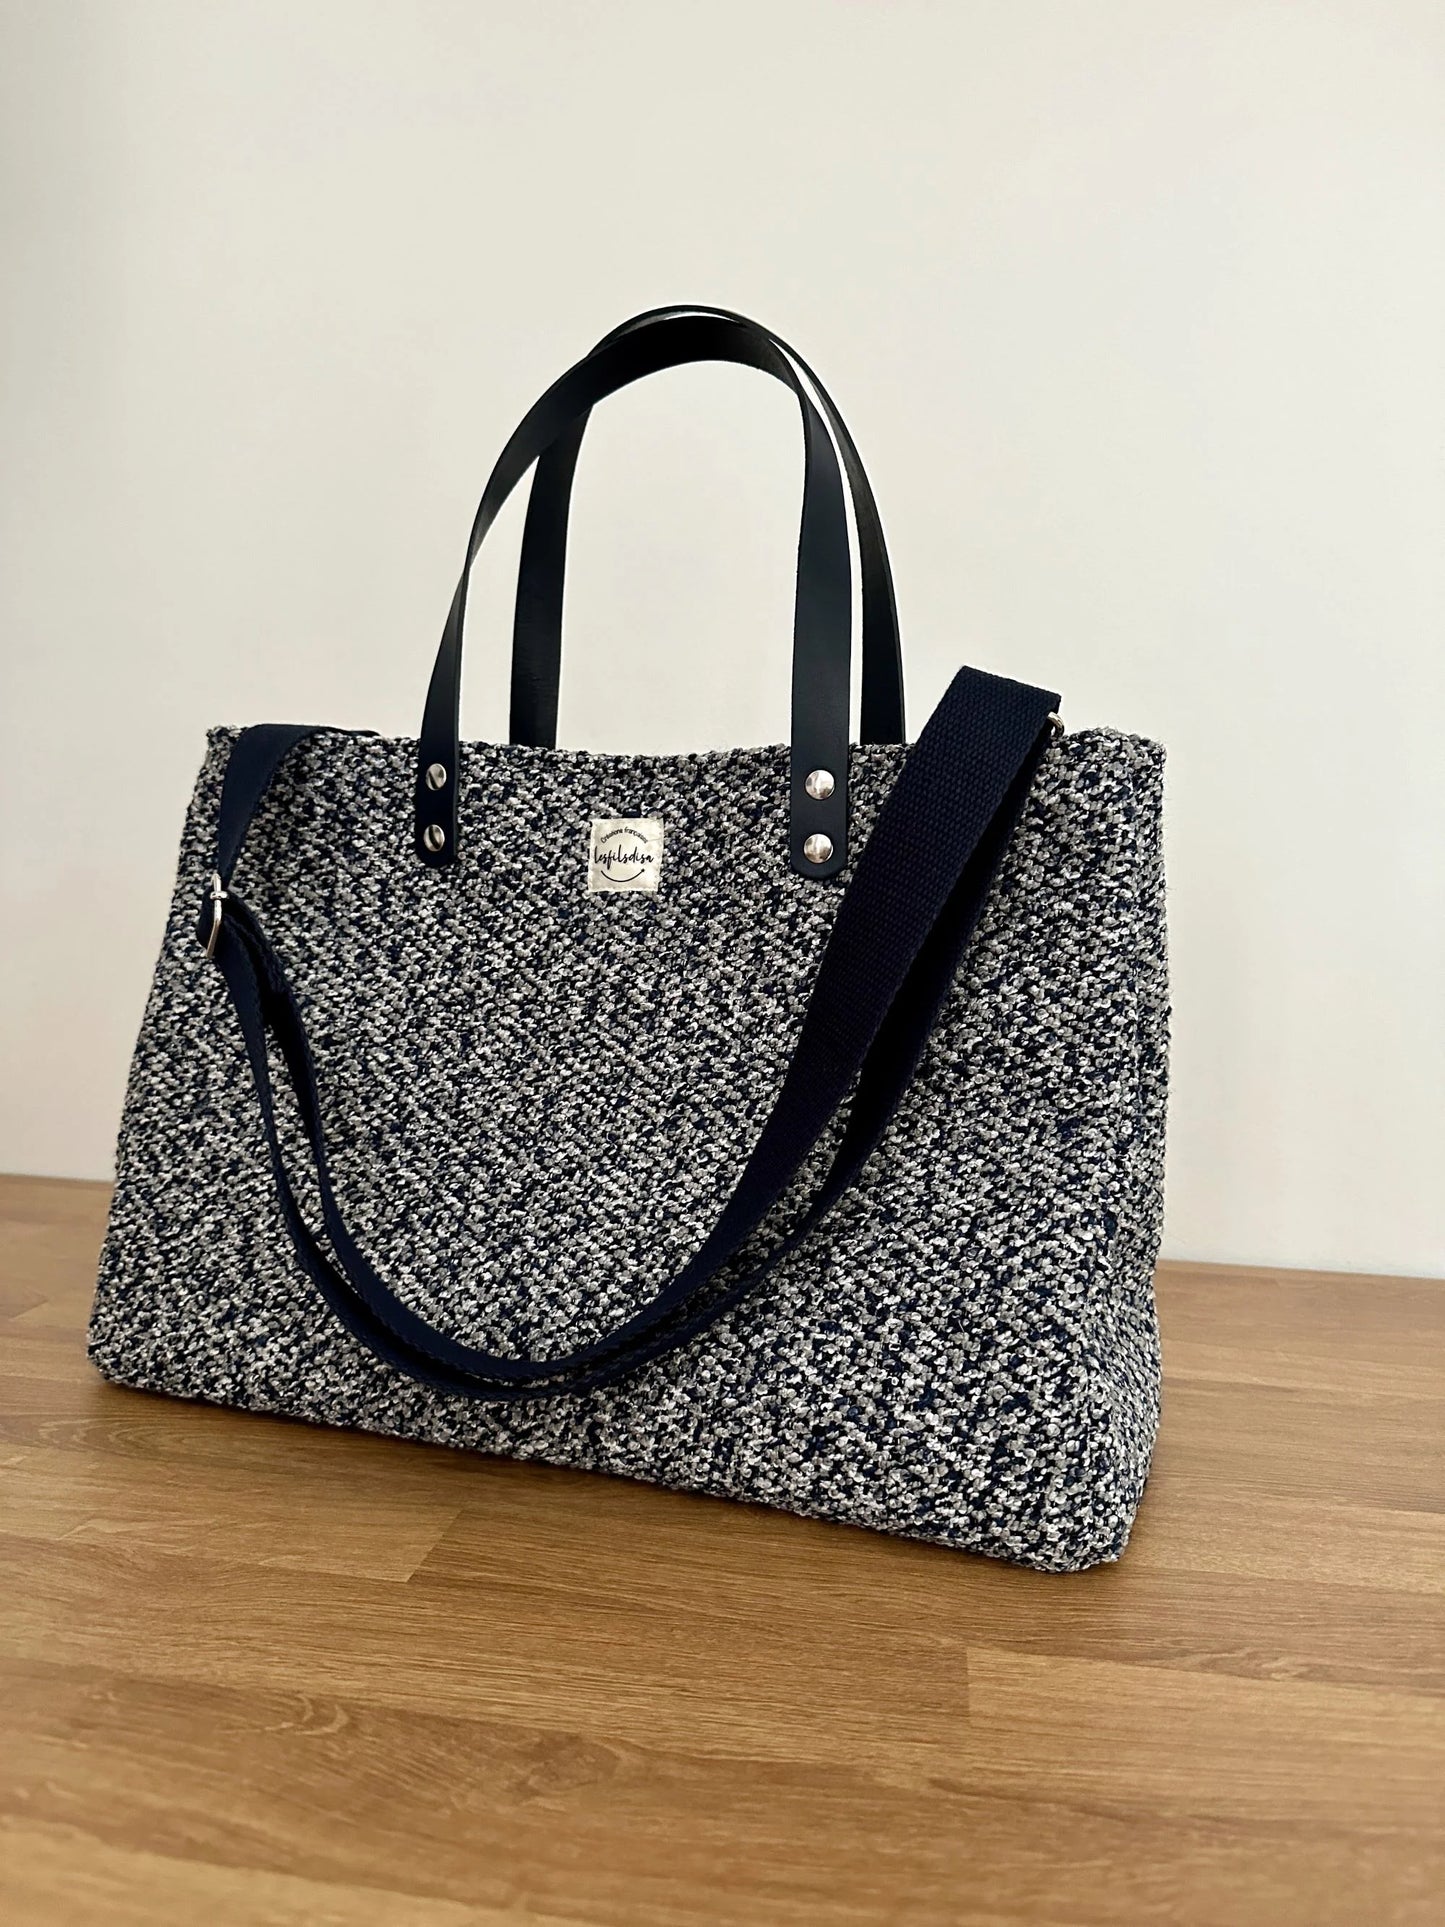 Le sac shopper bleu chiné, vue de face avant avec sa bandoulière réglable et amovible.